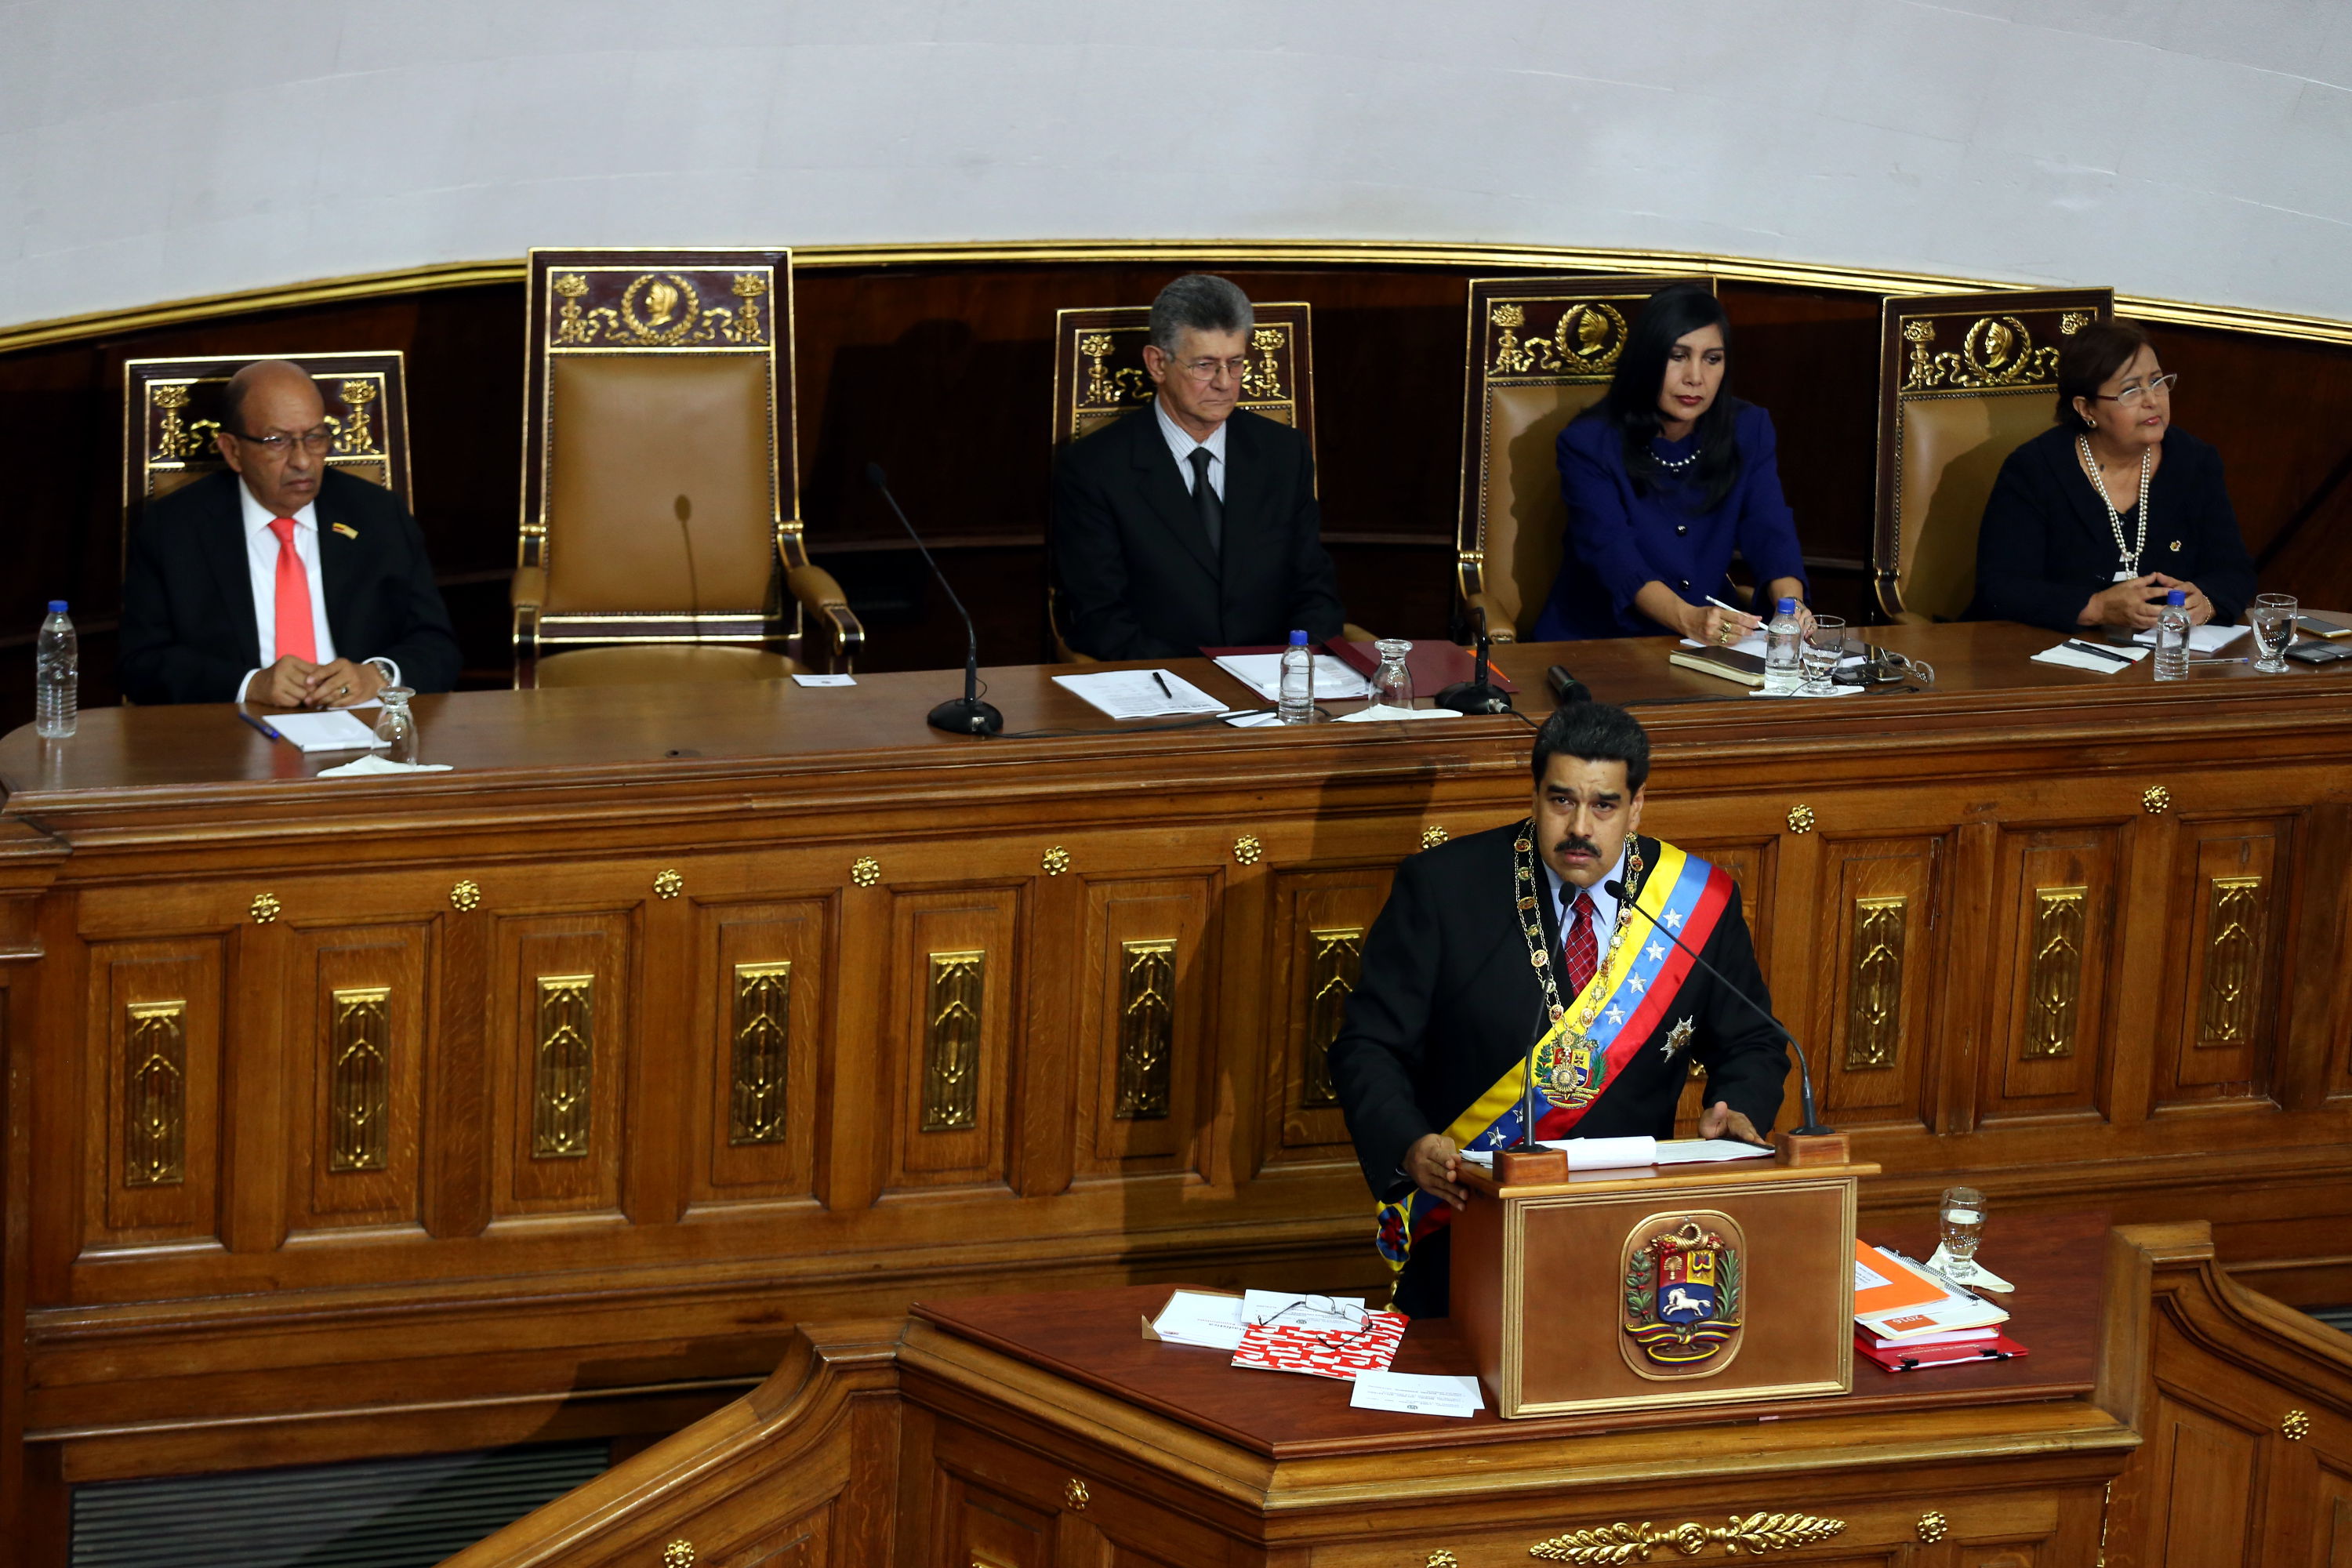 El mensaje del Presidente venezolano fue claro y contundente: No a la privatización.